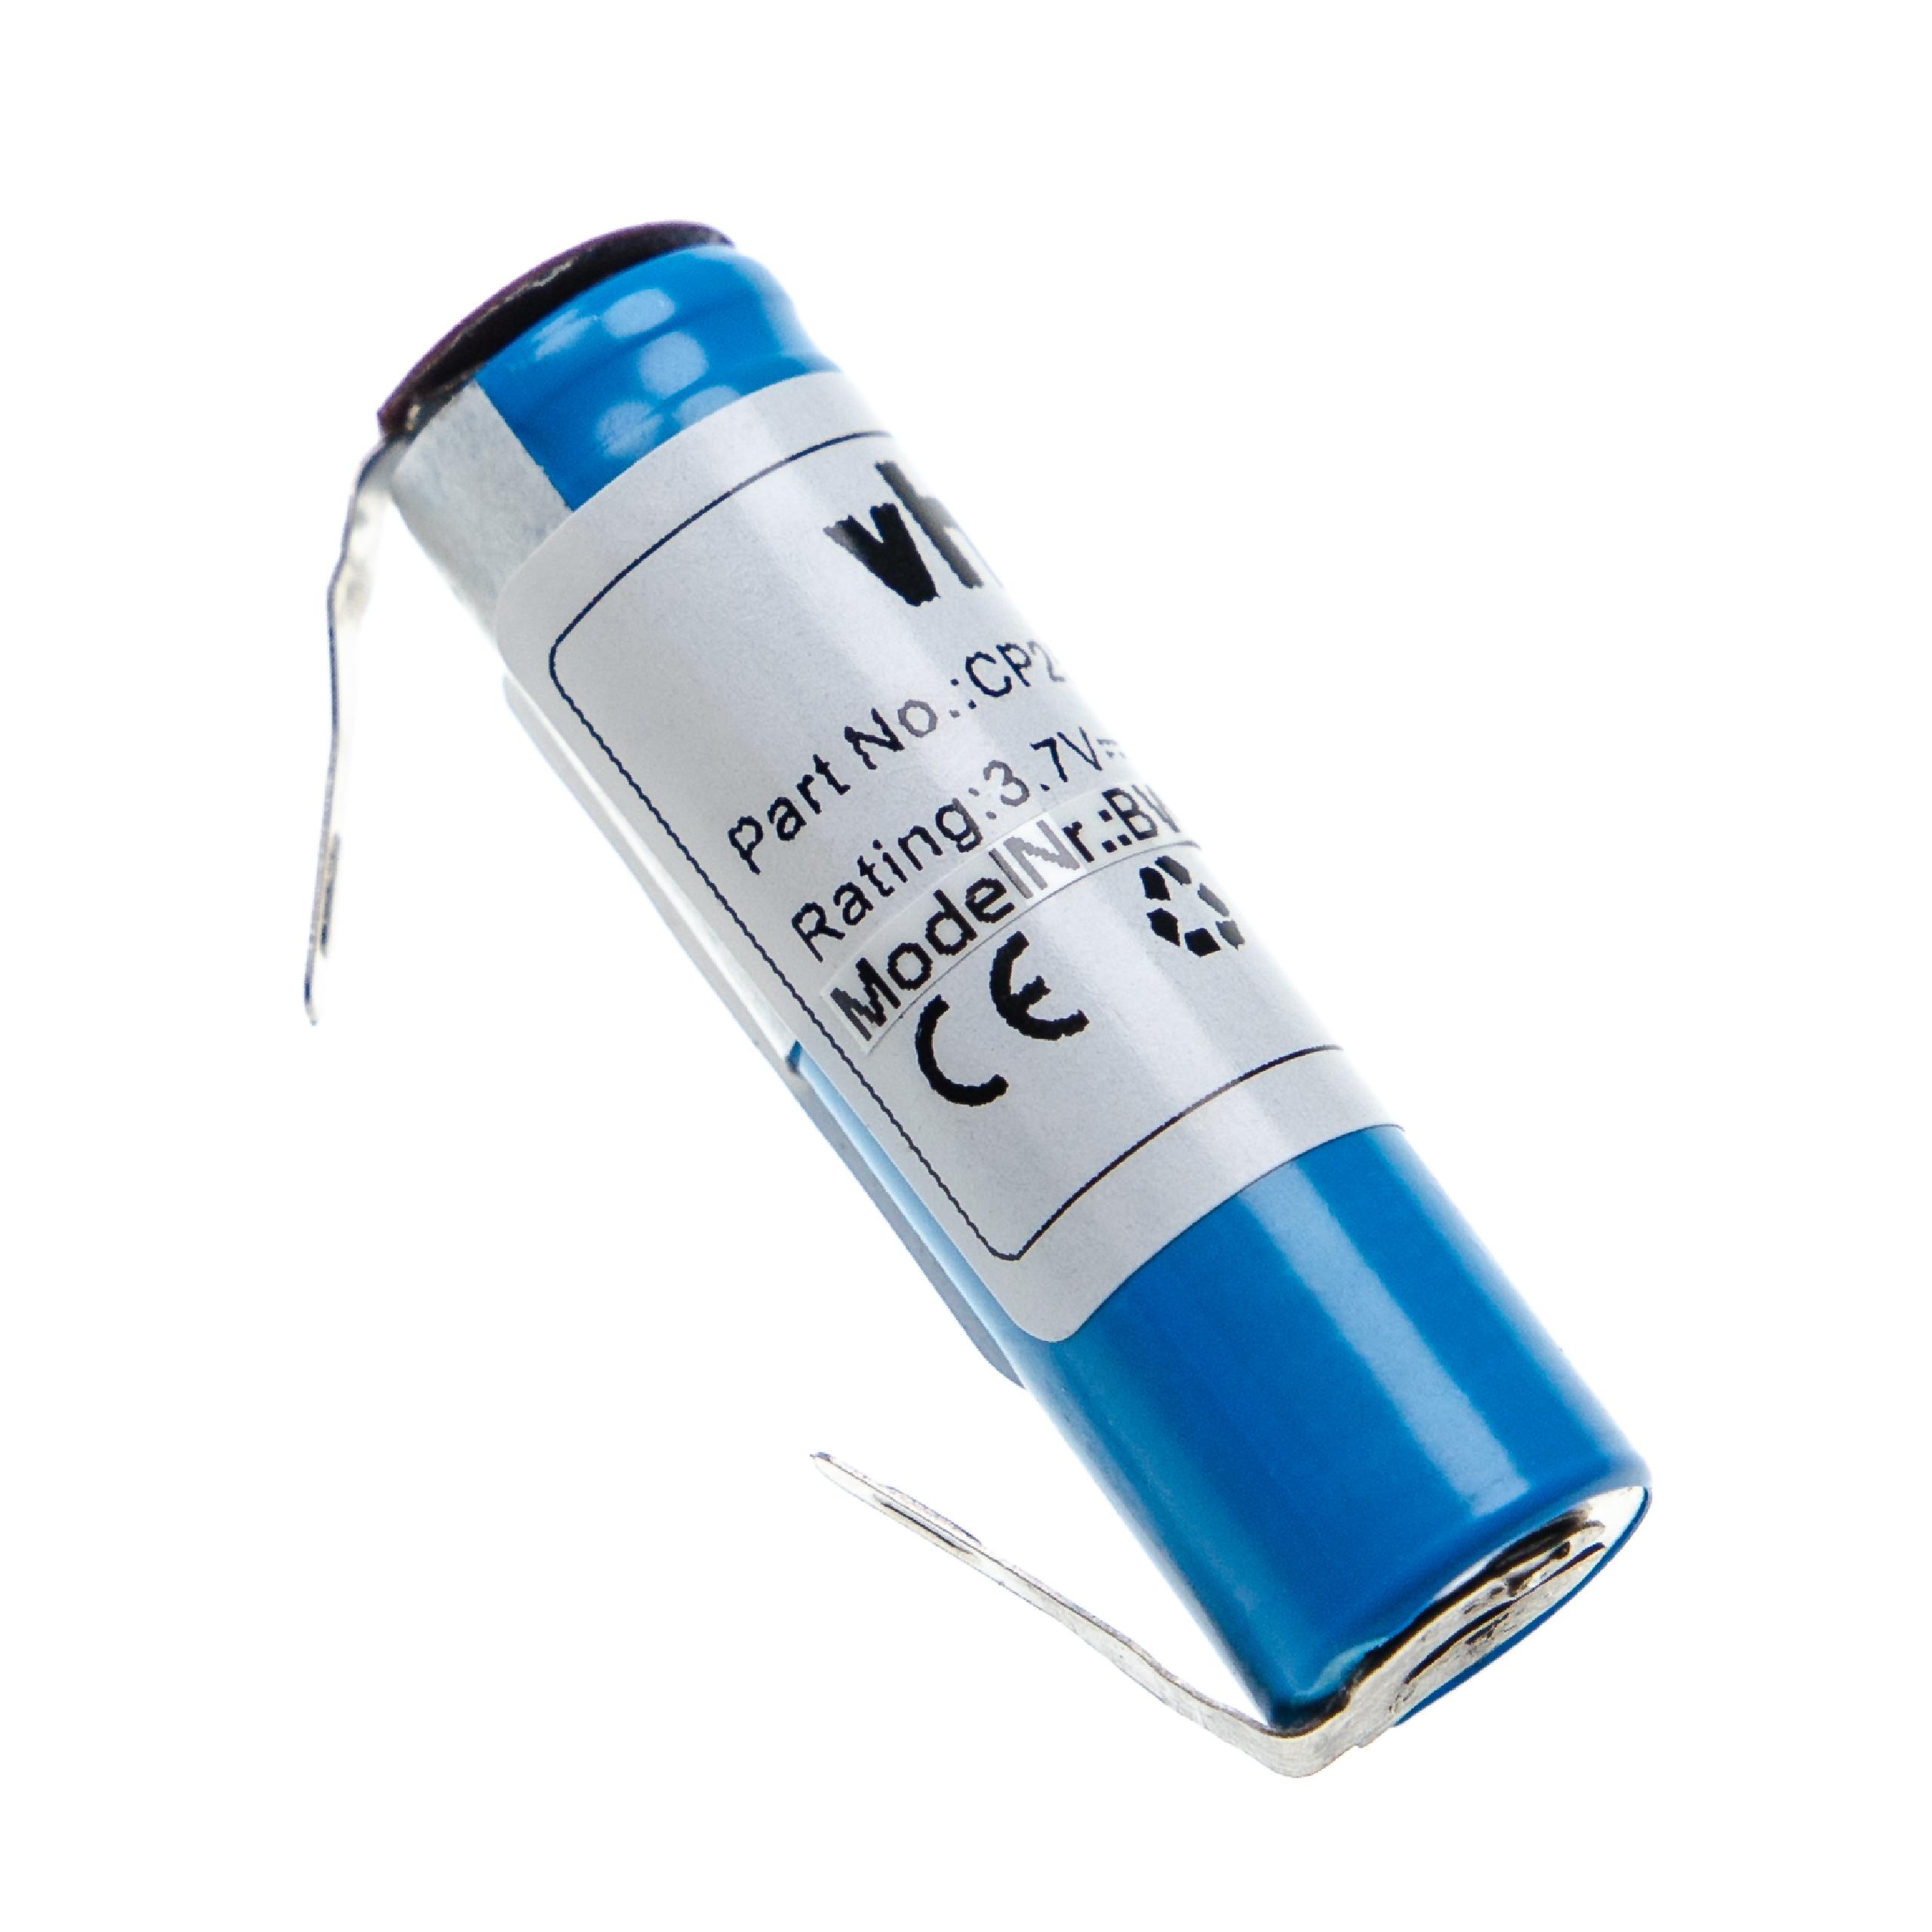 Batterie remplace Philips K V112MSF17Z, SE US14500GR, SE VS145000V pour rasoir électrique - 800mAh 3,7V Li-ion